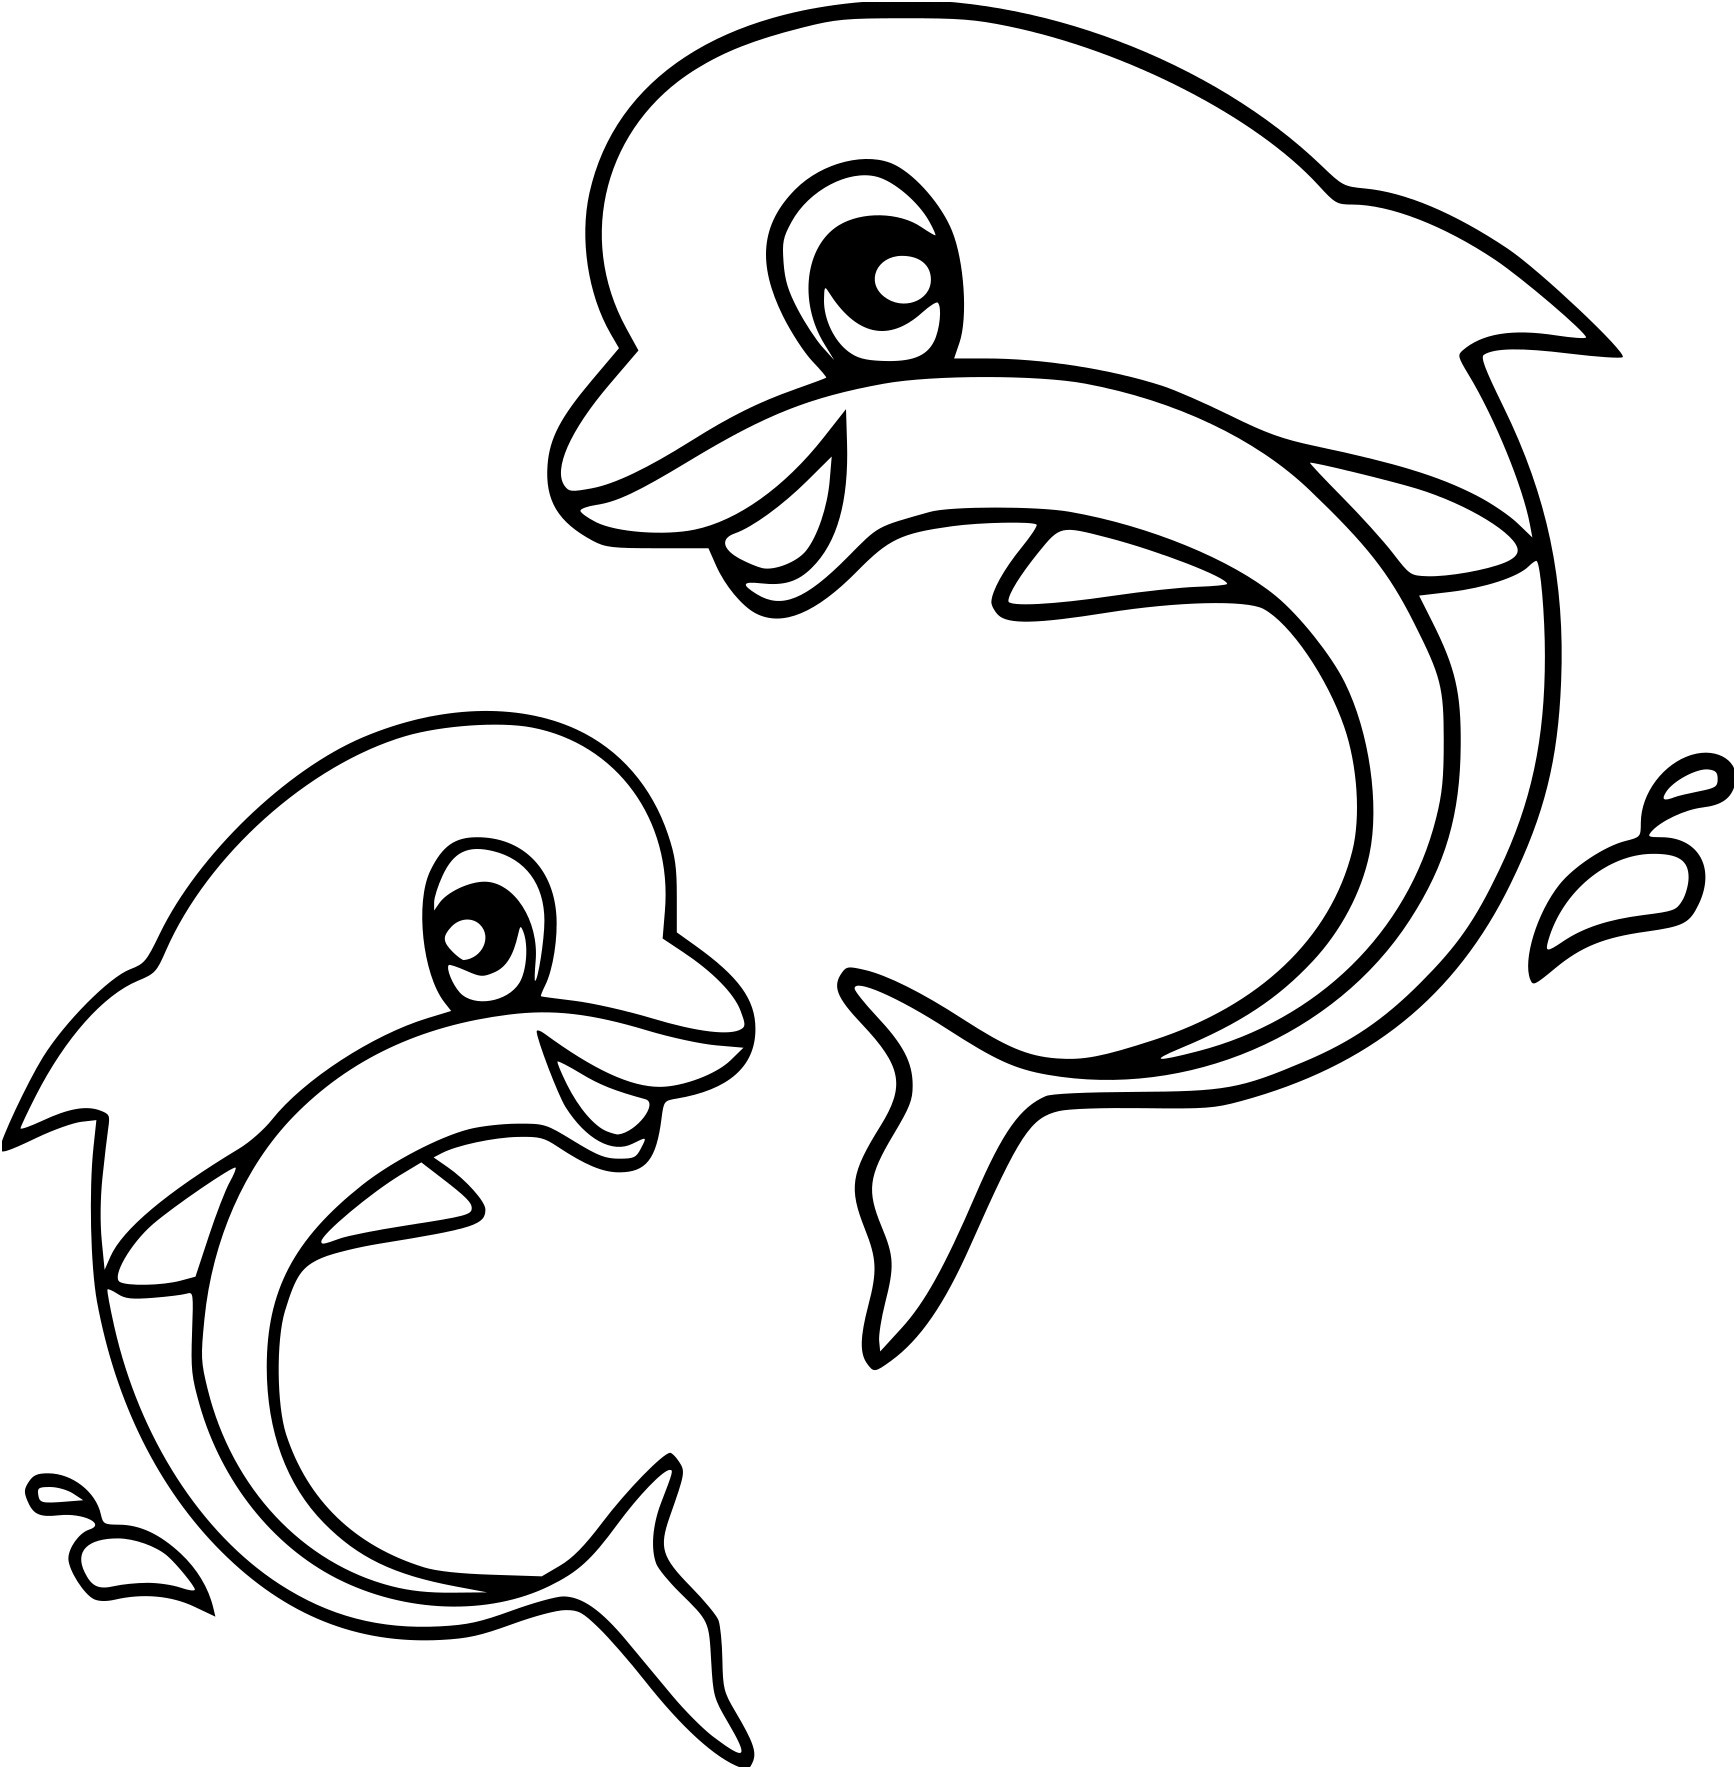 dessin a colorier gratuit de dauphin